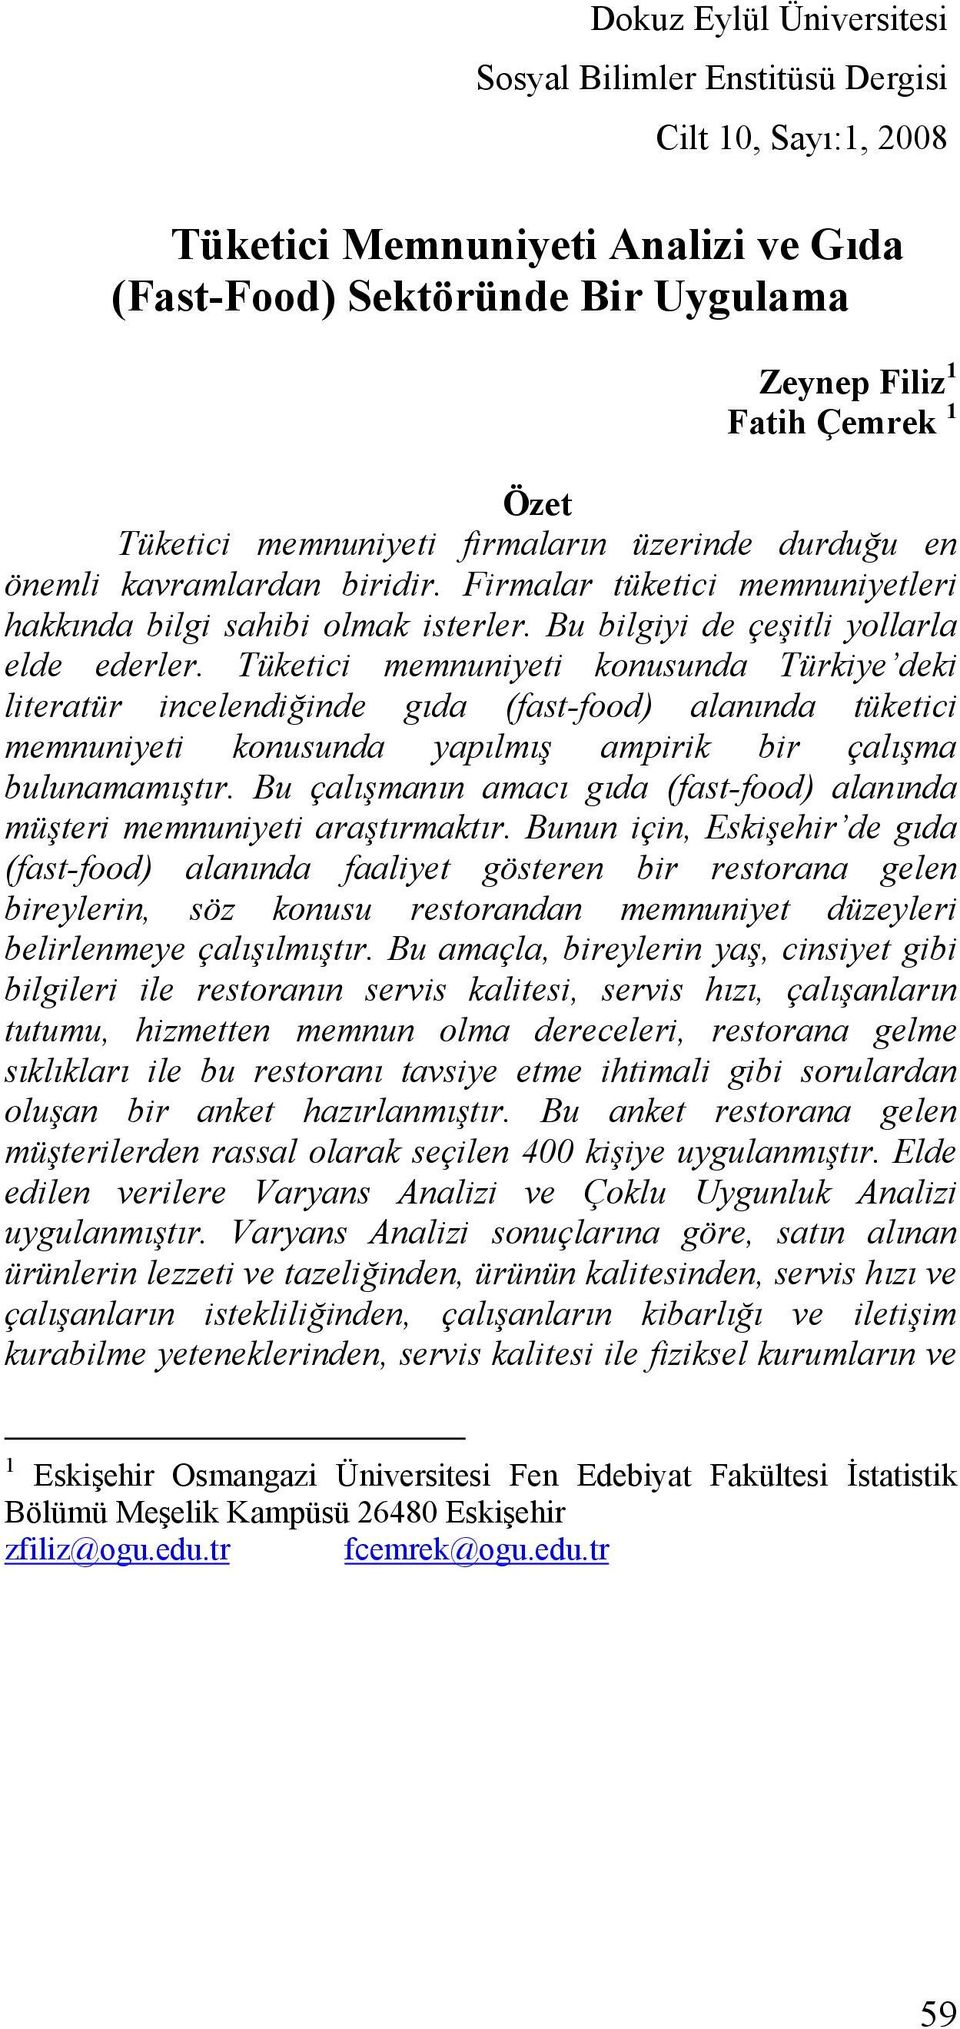 Tüketici memnuniyeti konusunda Türkiye deki literatür incelendiğinde gıda (fast-food) alanında tüketici memnuniyeti konusunda yapılmış ampirik bir çalışma bulunamamıştır.